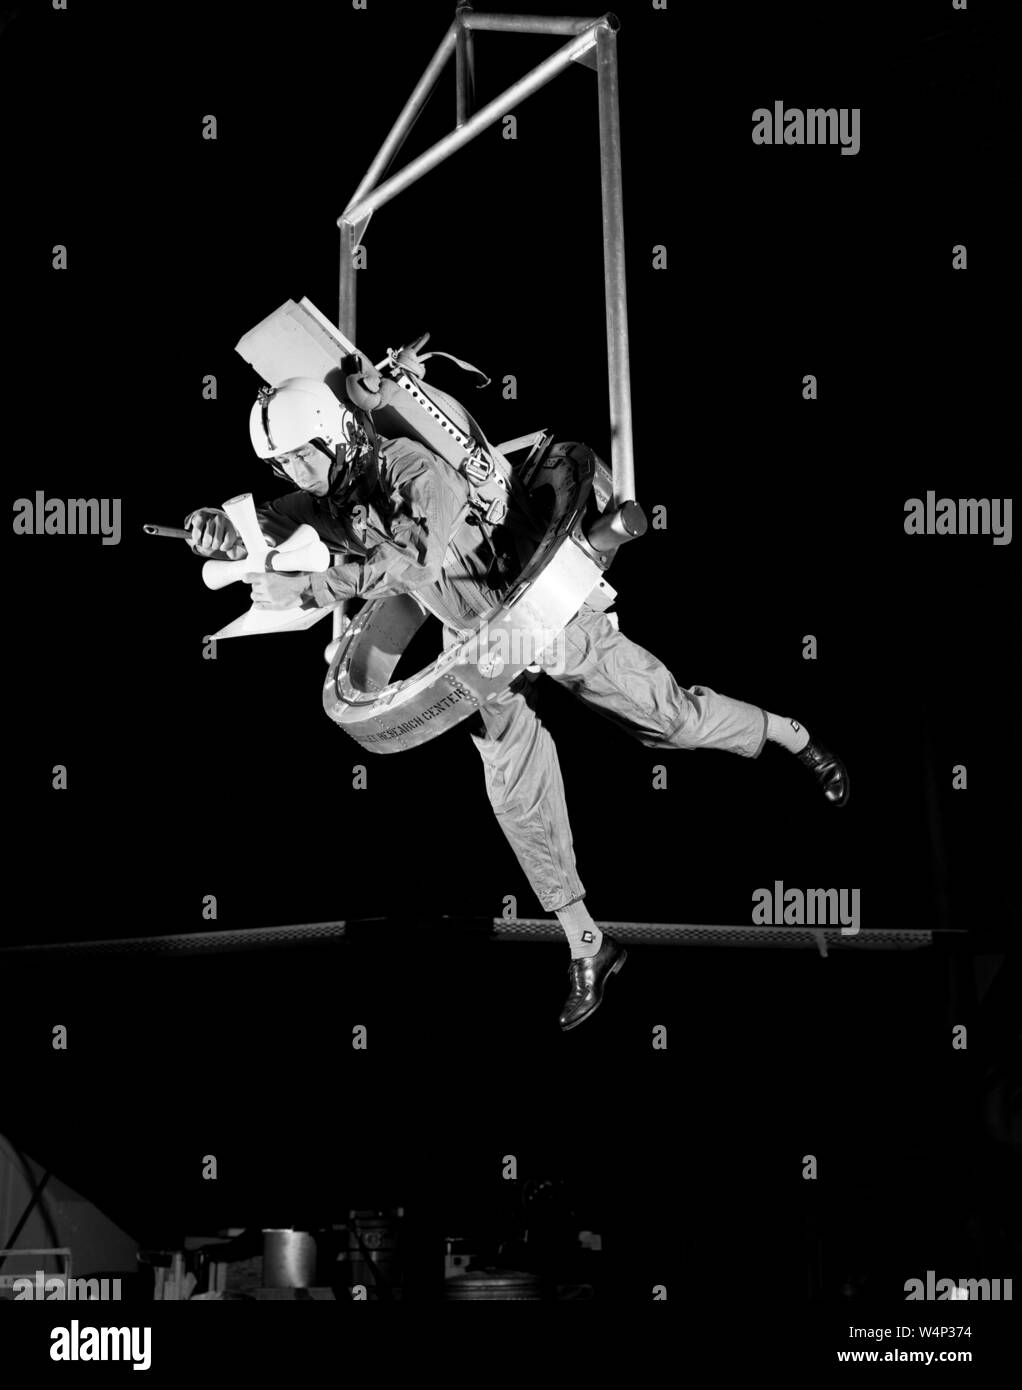 Le pilote d'essai de la NASA dans un environnement à gravité zéro cardan Extravehicular One-Man utilise Arrangement (OMEGA), 20 janvier 1967. Droit avec la permission de la National Aeronautics and Space Administration (NASA). () Banque D'Images